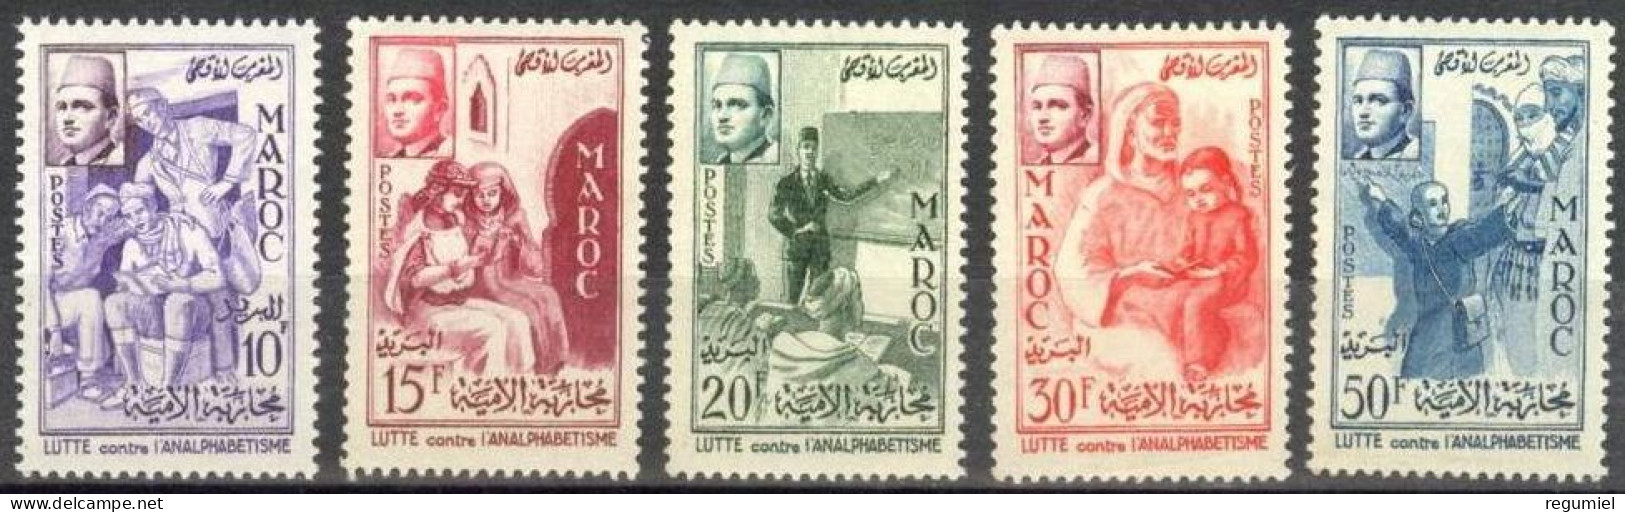 Maroc  369/373 ** MNH. 1956 - Maroc (1956-...)